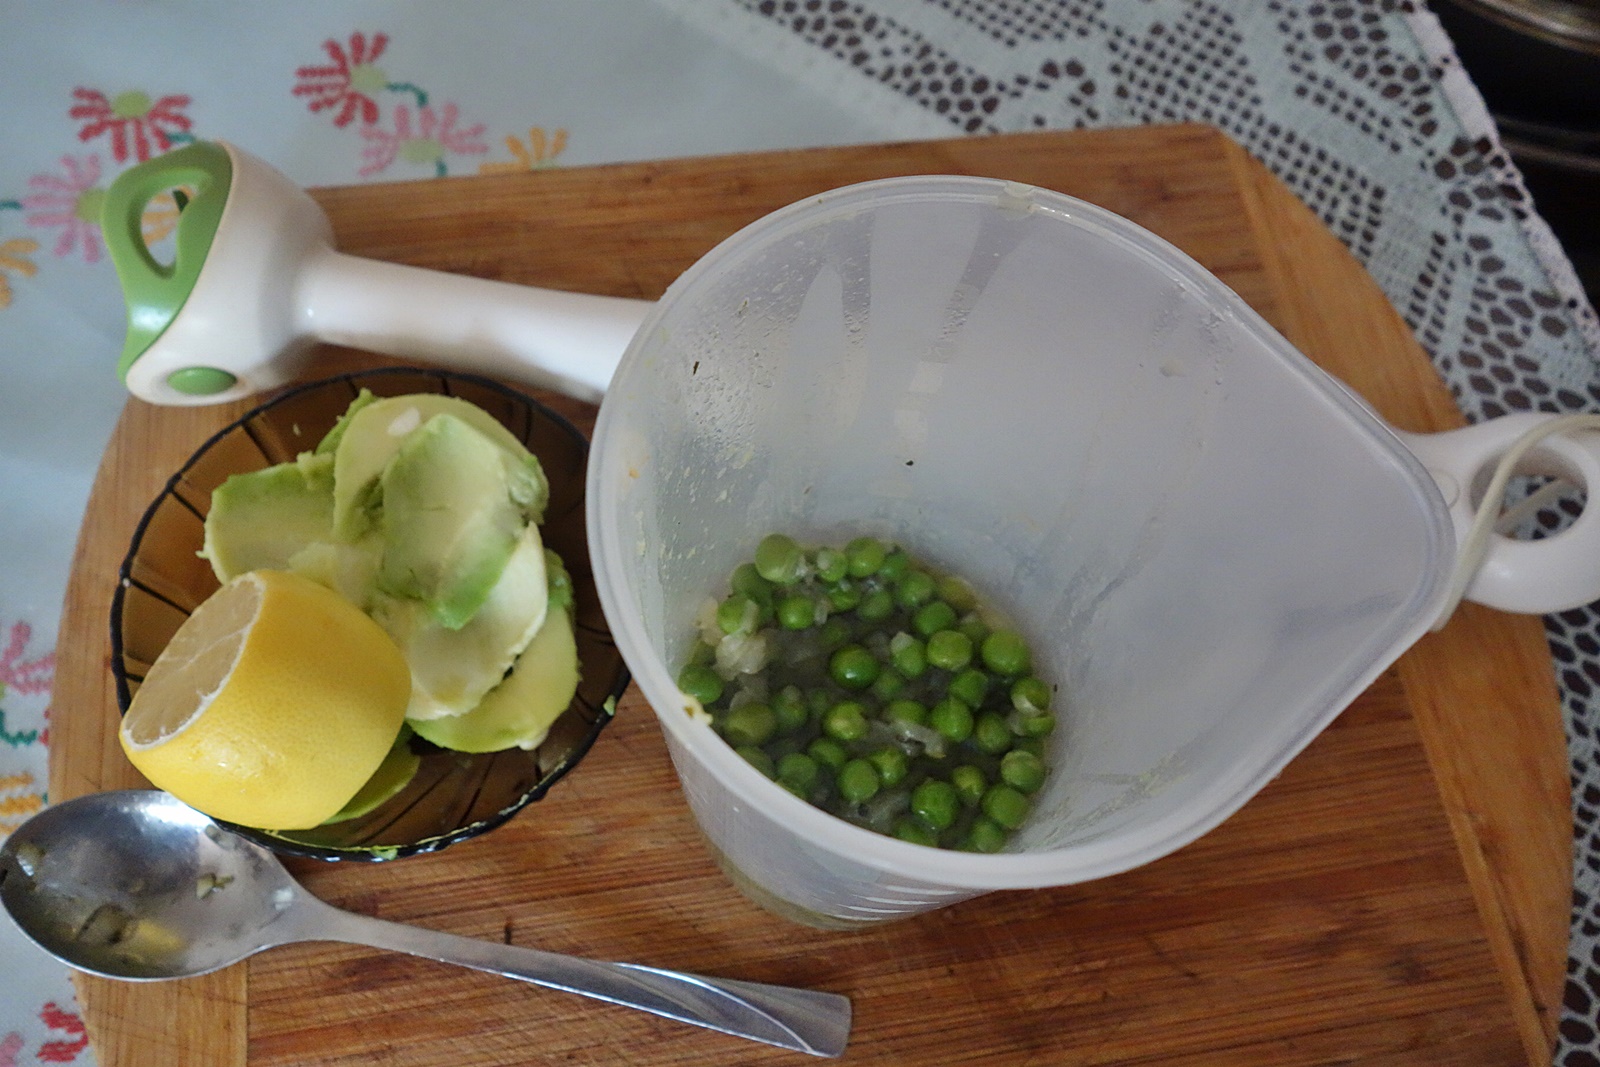 Supa crema de mazare verde cu avocado si menta verde